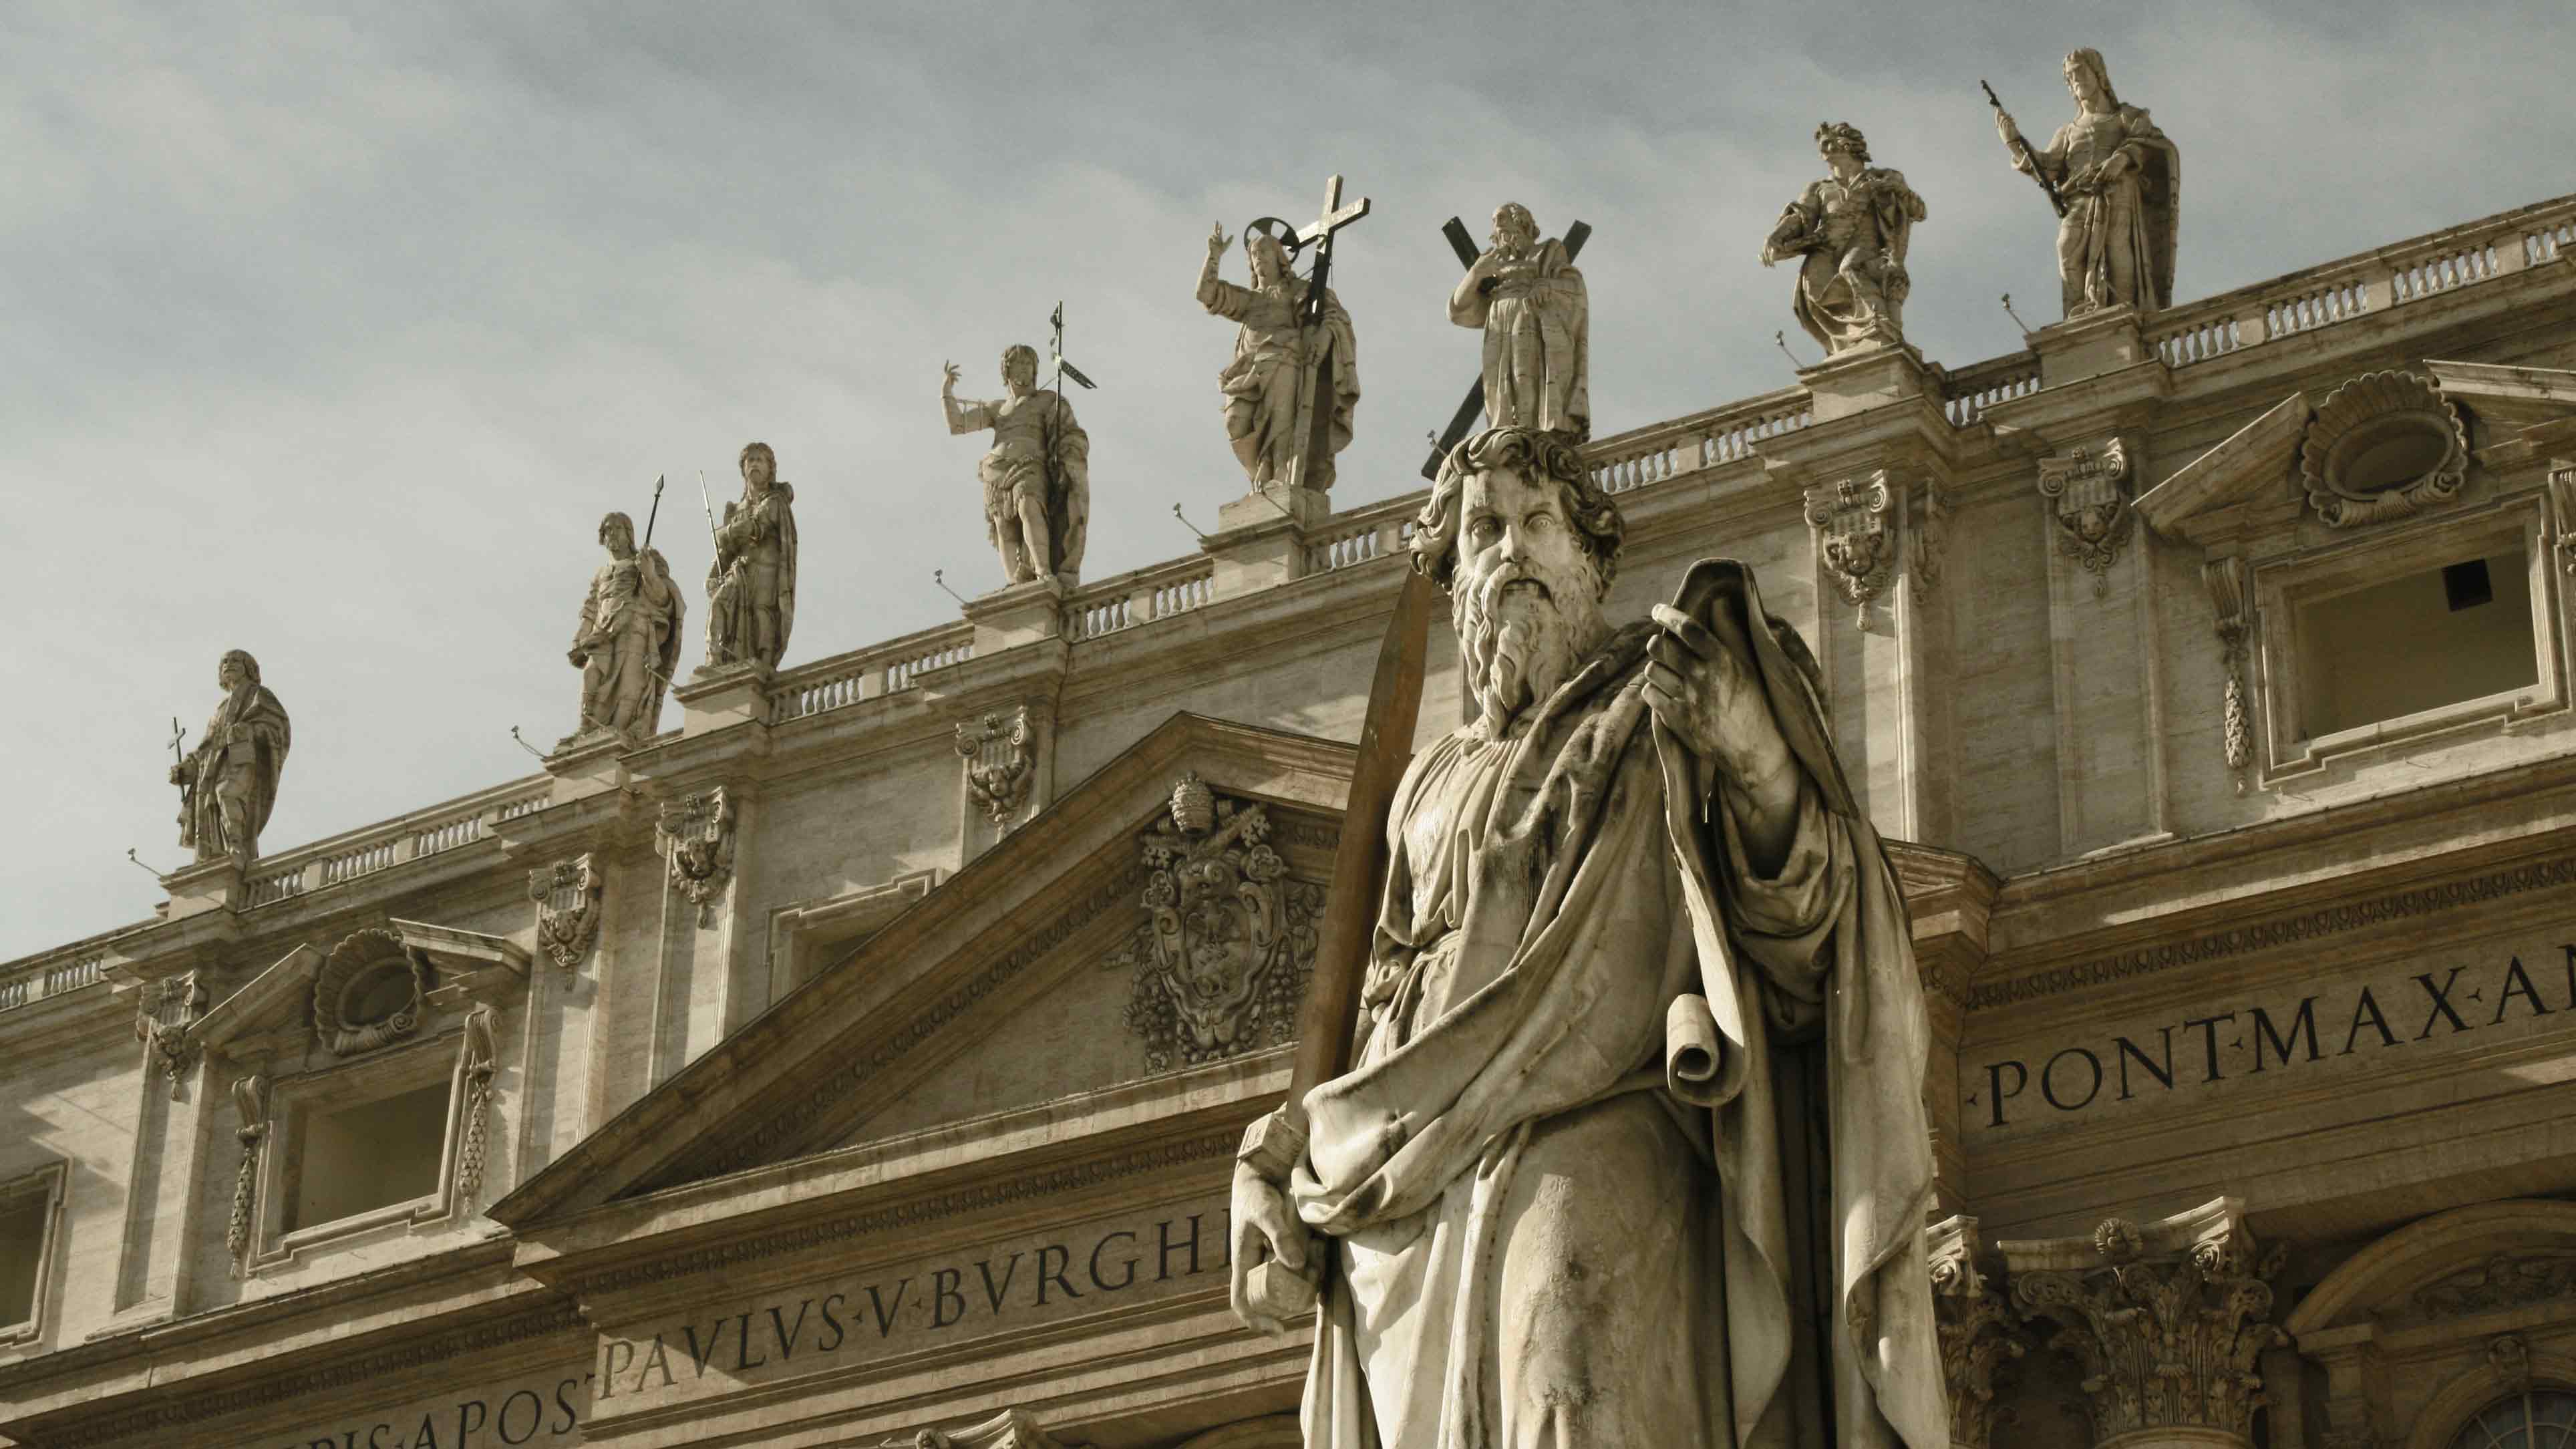 Sculpture in front of St. Peter's Basilica in Vatican